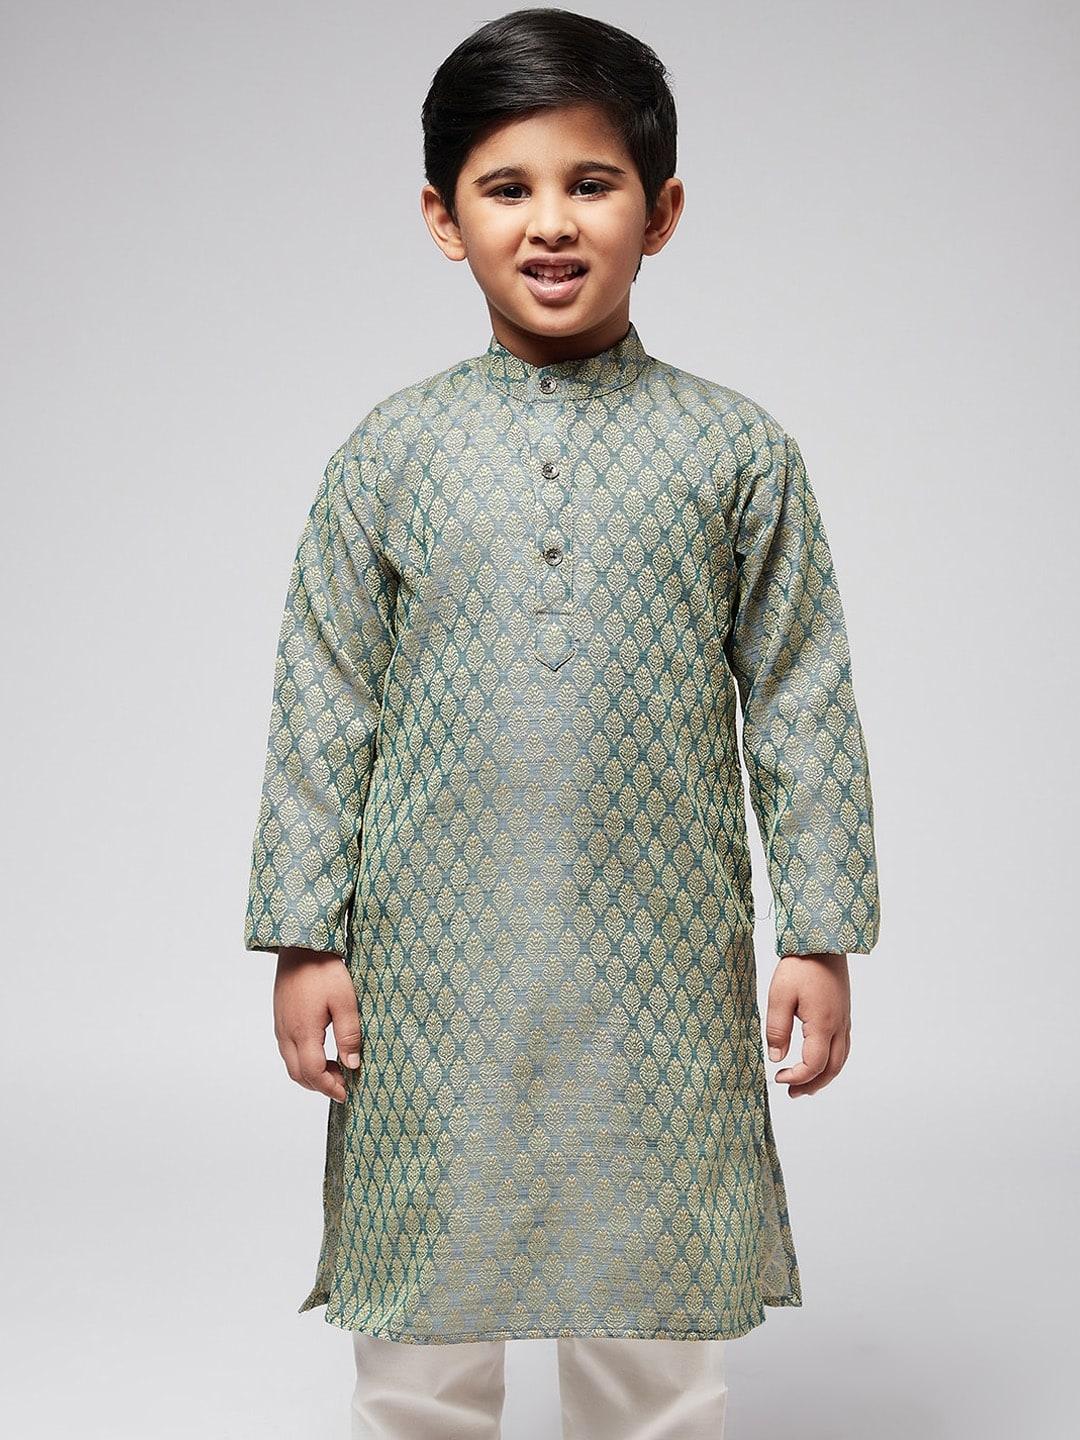 sojanya boys teal green & gold-toned ethnic motifs jacquard kurta